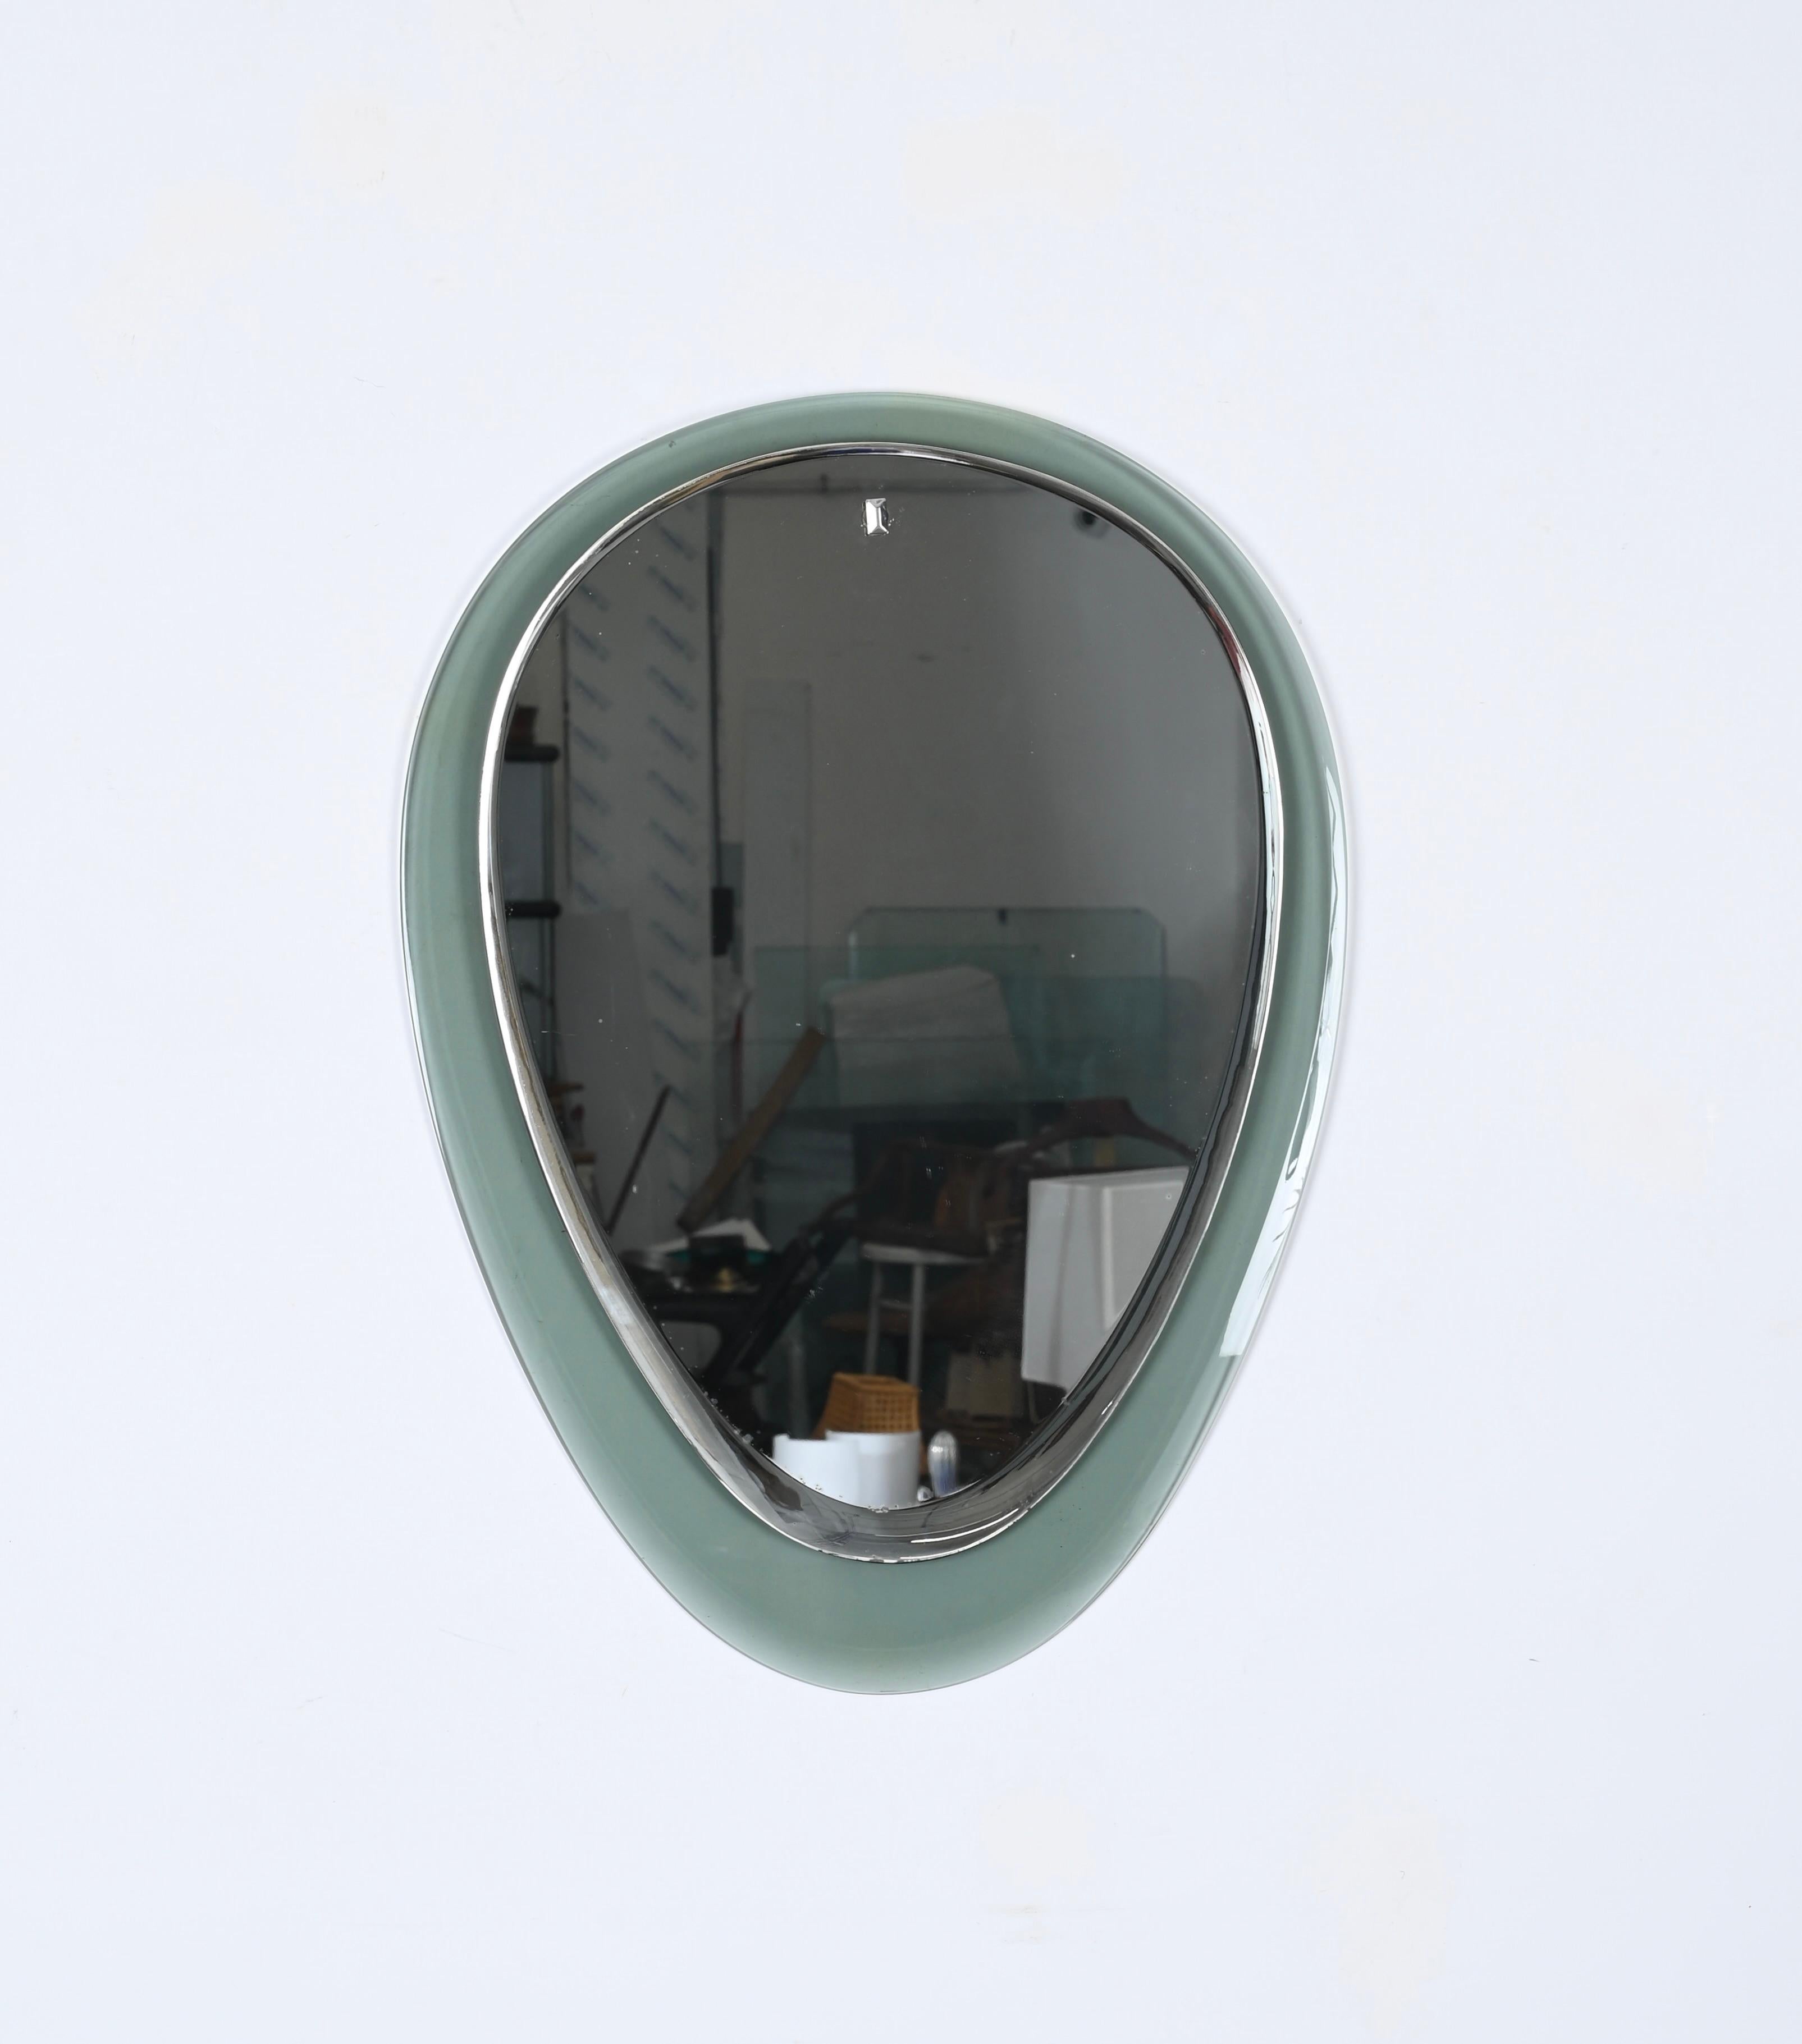 Superbe miroir ovale du milieu du siècle dernier, conçu par Cristal Art en Italie dans les années 1950. 

Ce rare miroir présente un cadre en verre d'art biseauté vert aigue-marine et est complété par un fantastique miroir à large biseau.
La qualité